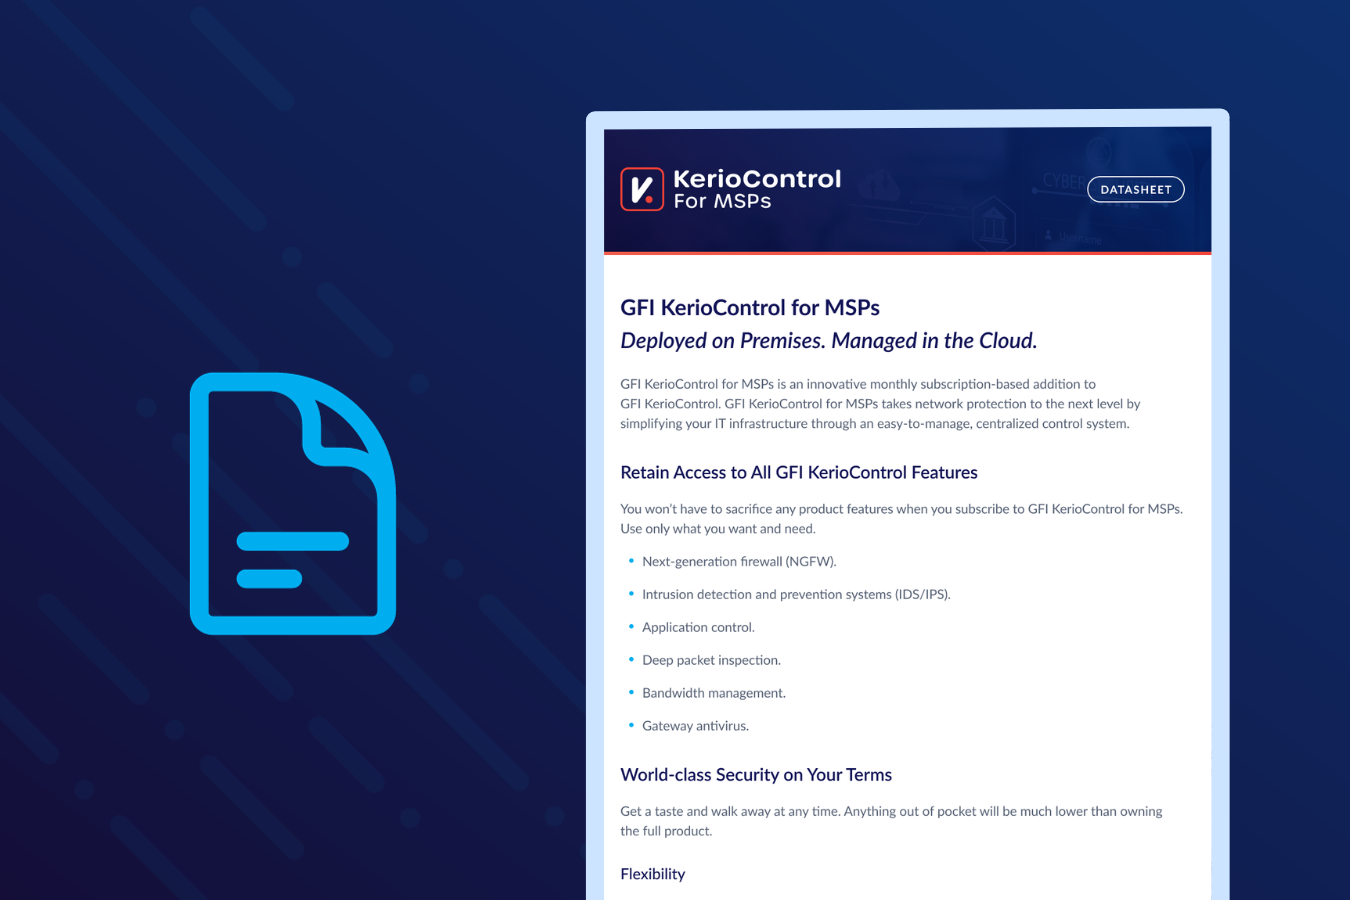 GFI KerioControl for MSPs - Datasheet